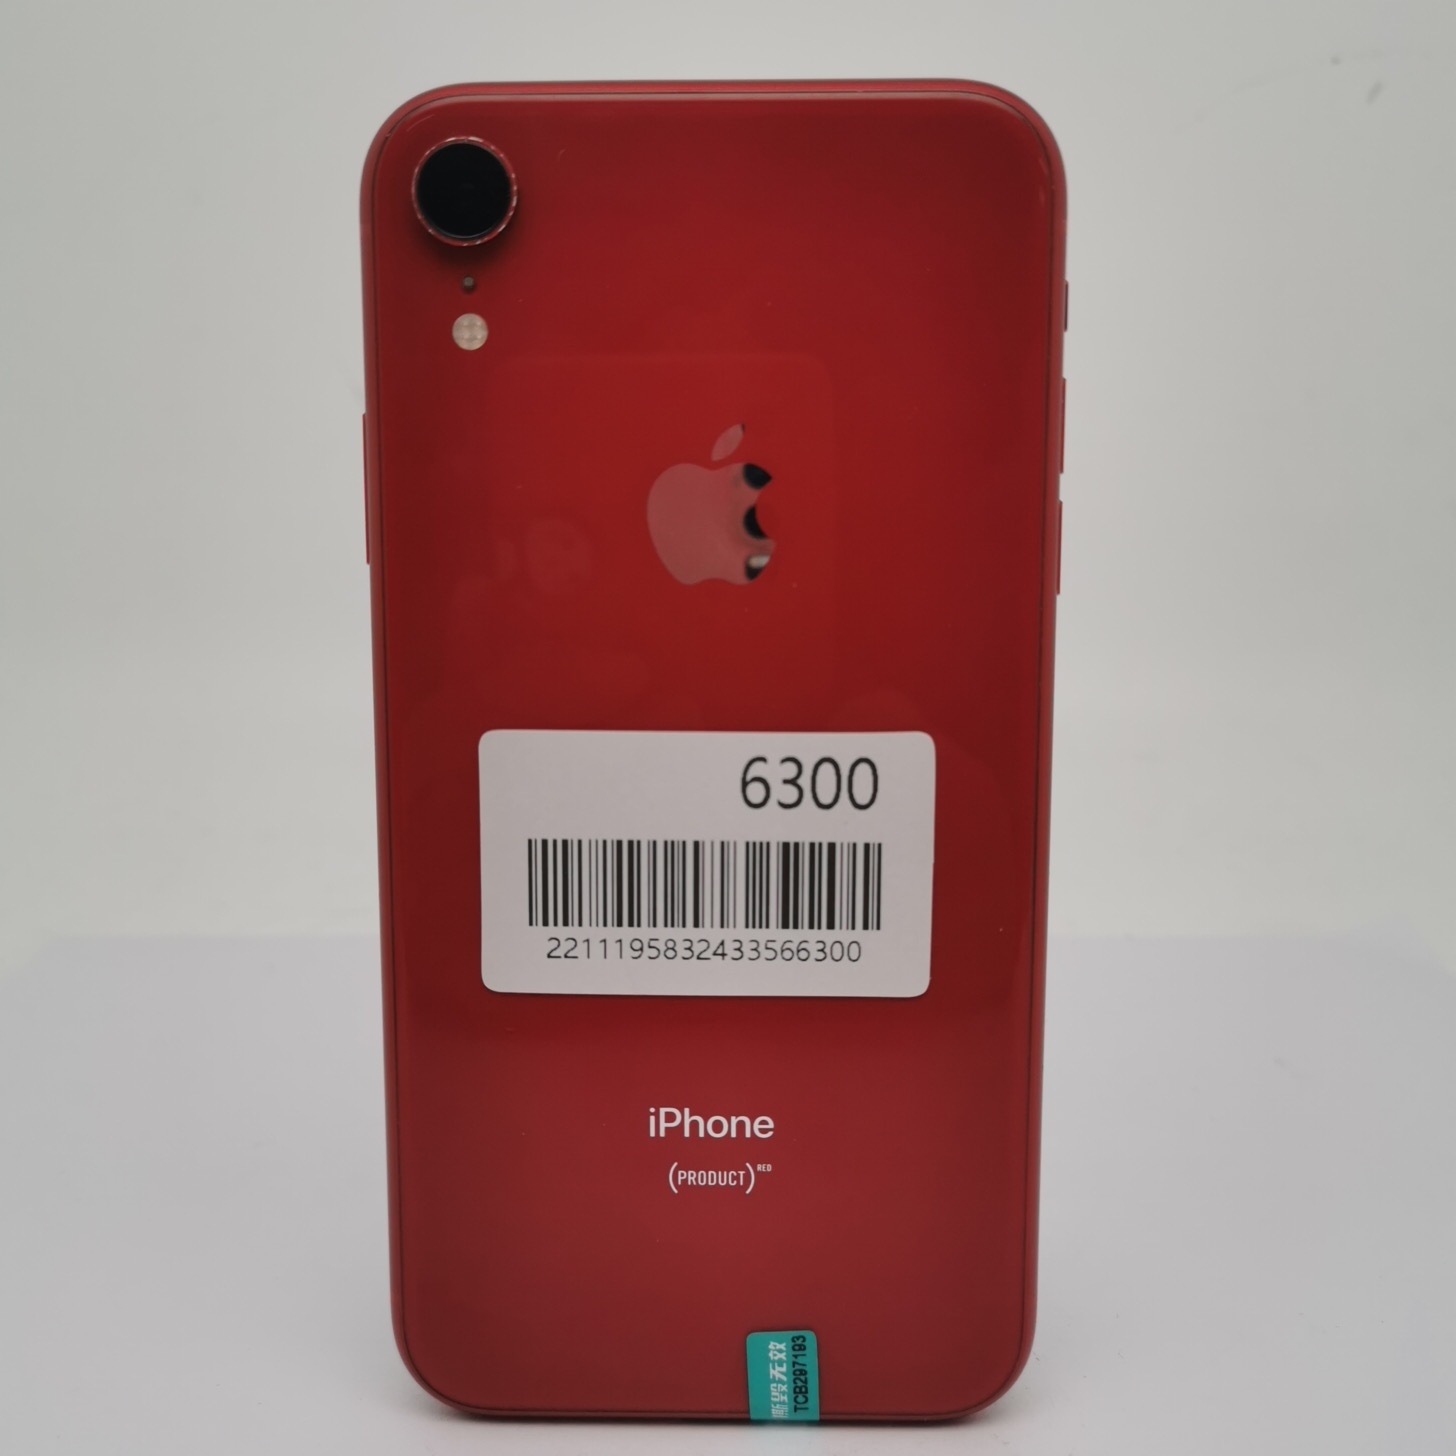 苹果【iPhone XR】4G全网通 红色 64G 国行 9成新 